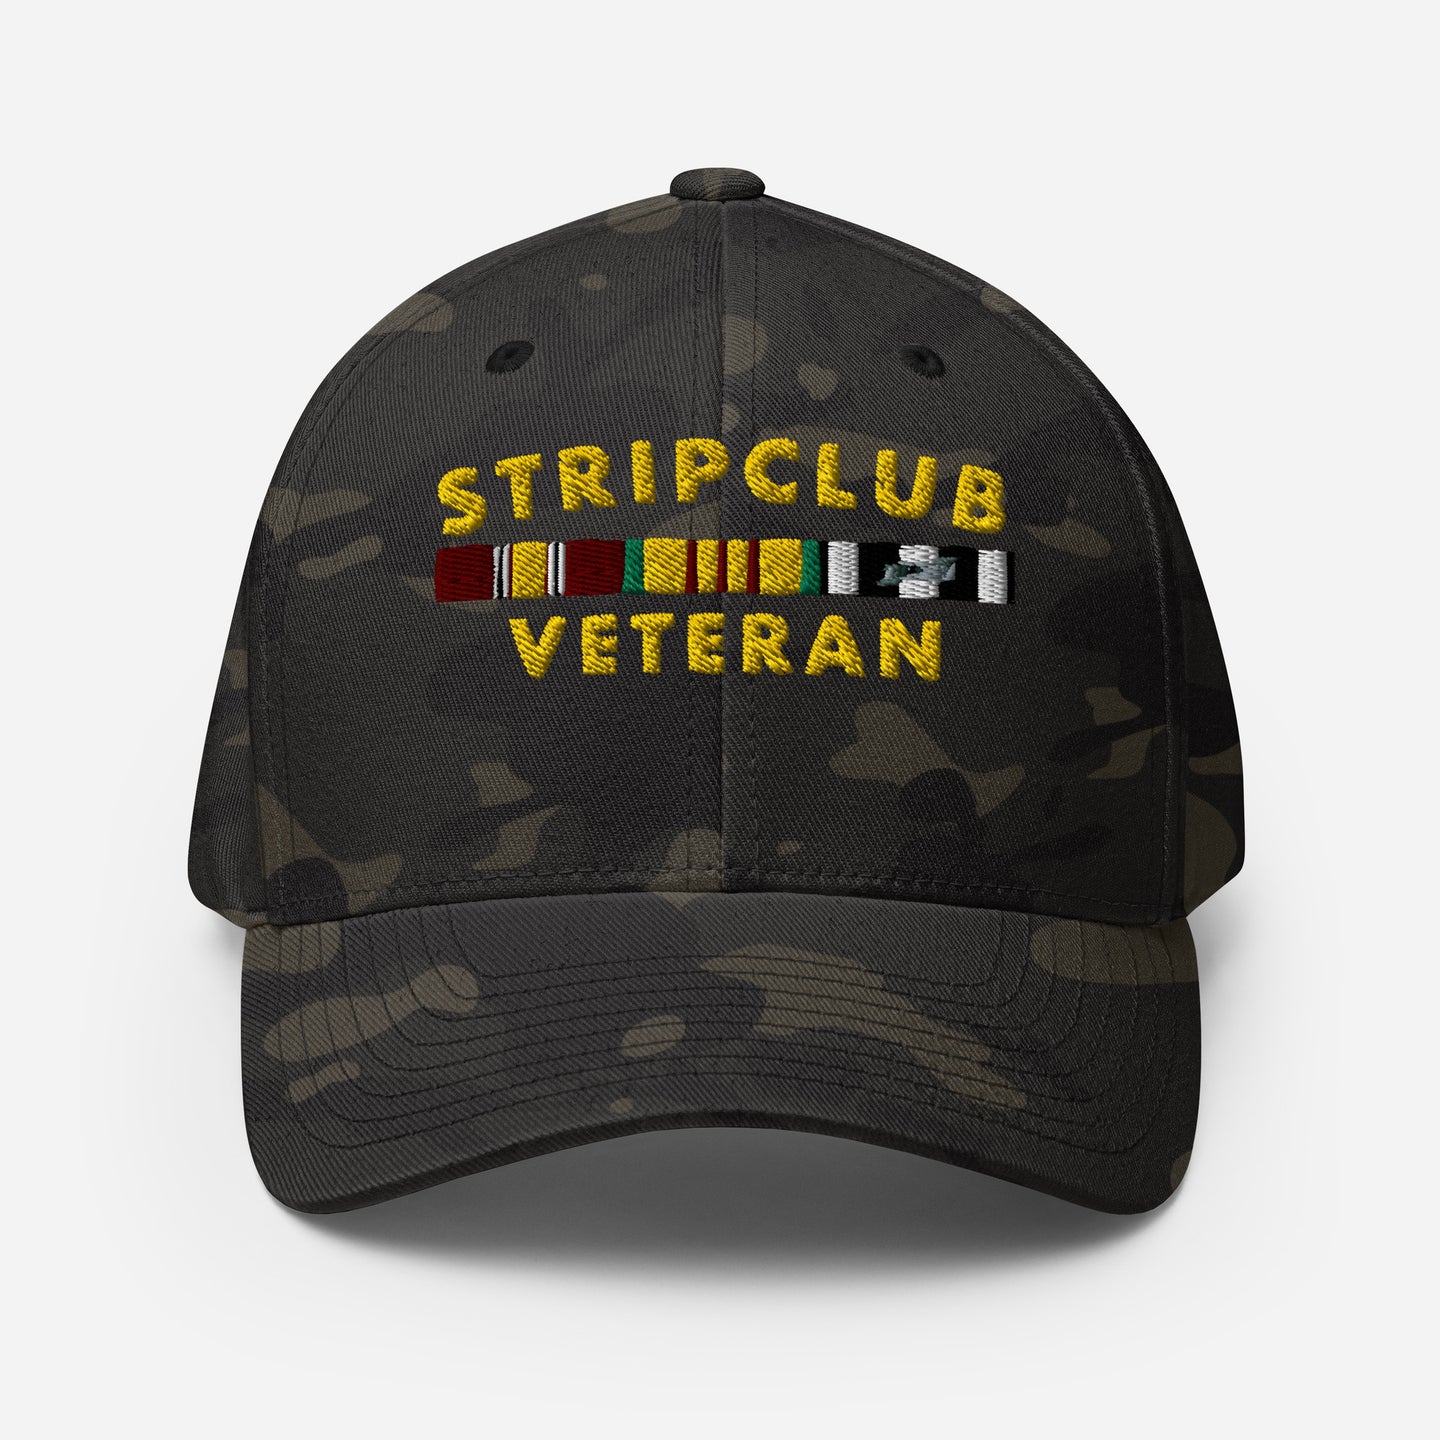 Sombrero veterano del club de striptease